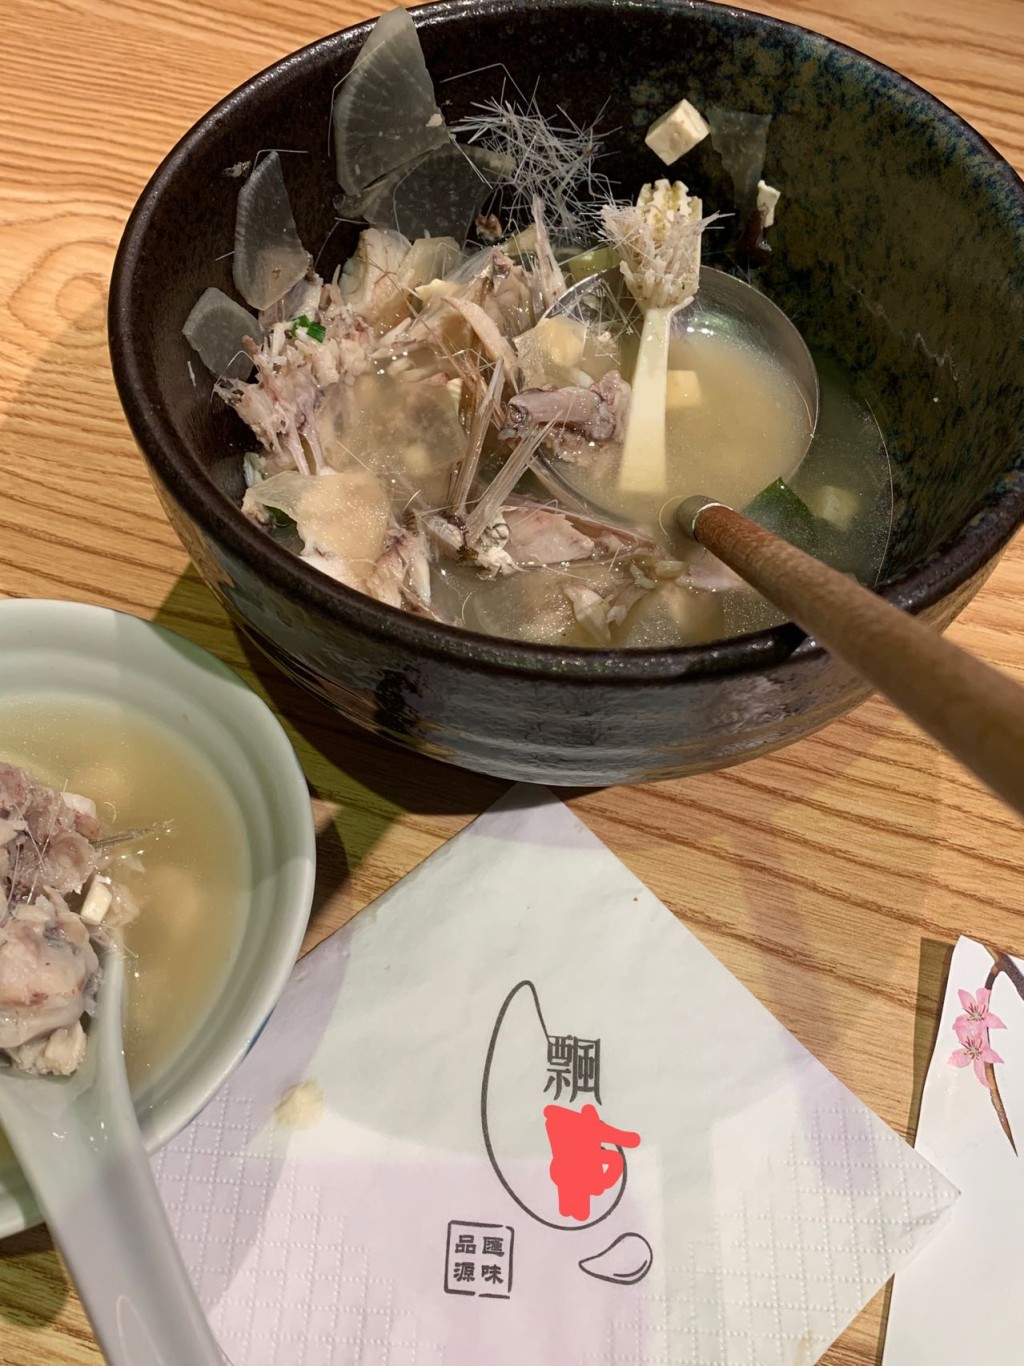 澳门网民光顾日式餐厅饮用鱼汤时竟然发现有牙刷。facebook澳门难食中伏团网民图片